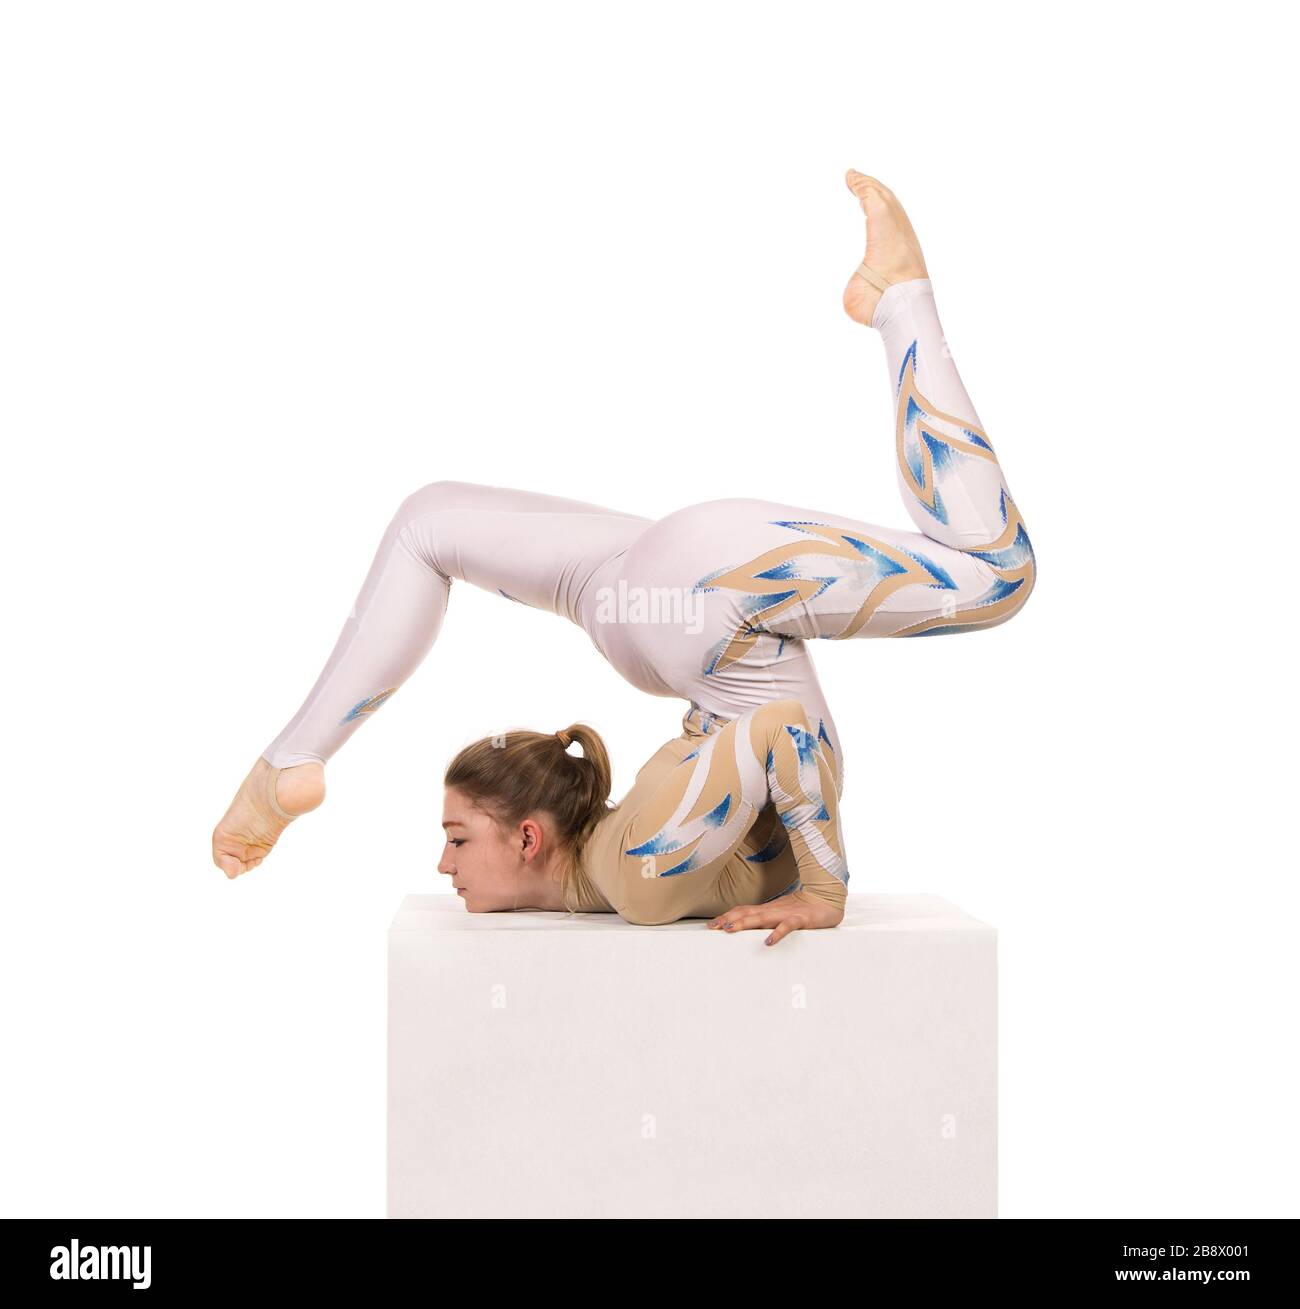 Akrobat Turnen, ein junger Zirkuskünstler in einem weißen und blauen Anzug, führt akrobatische Elemente aus. Studio, das ein isoliertes Bild auf weißem Hintergrund abschießt Stockfoto